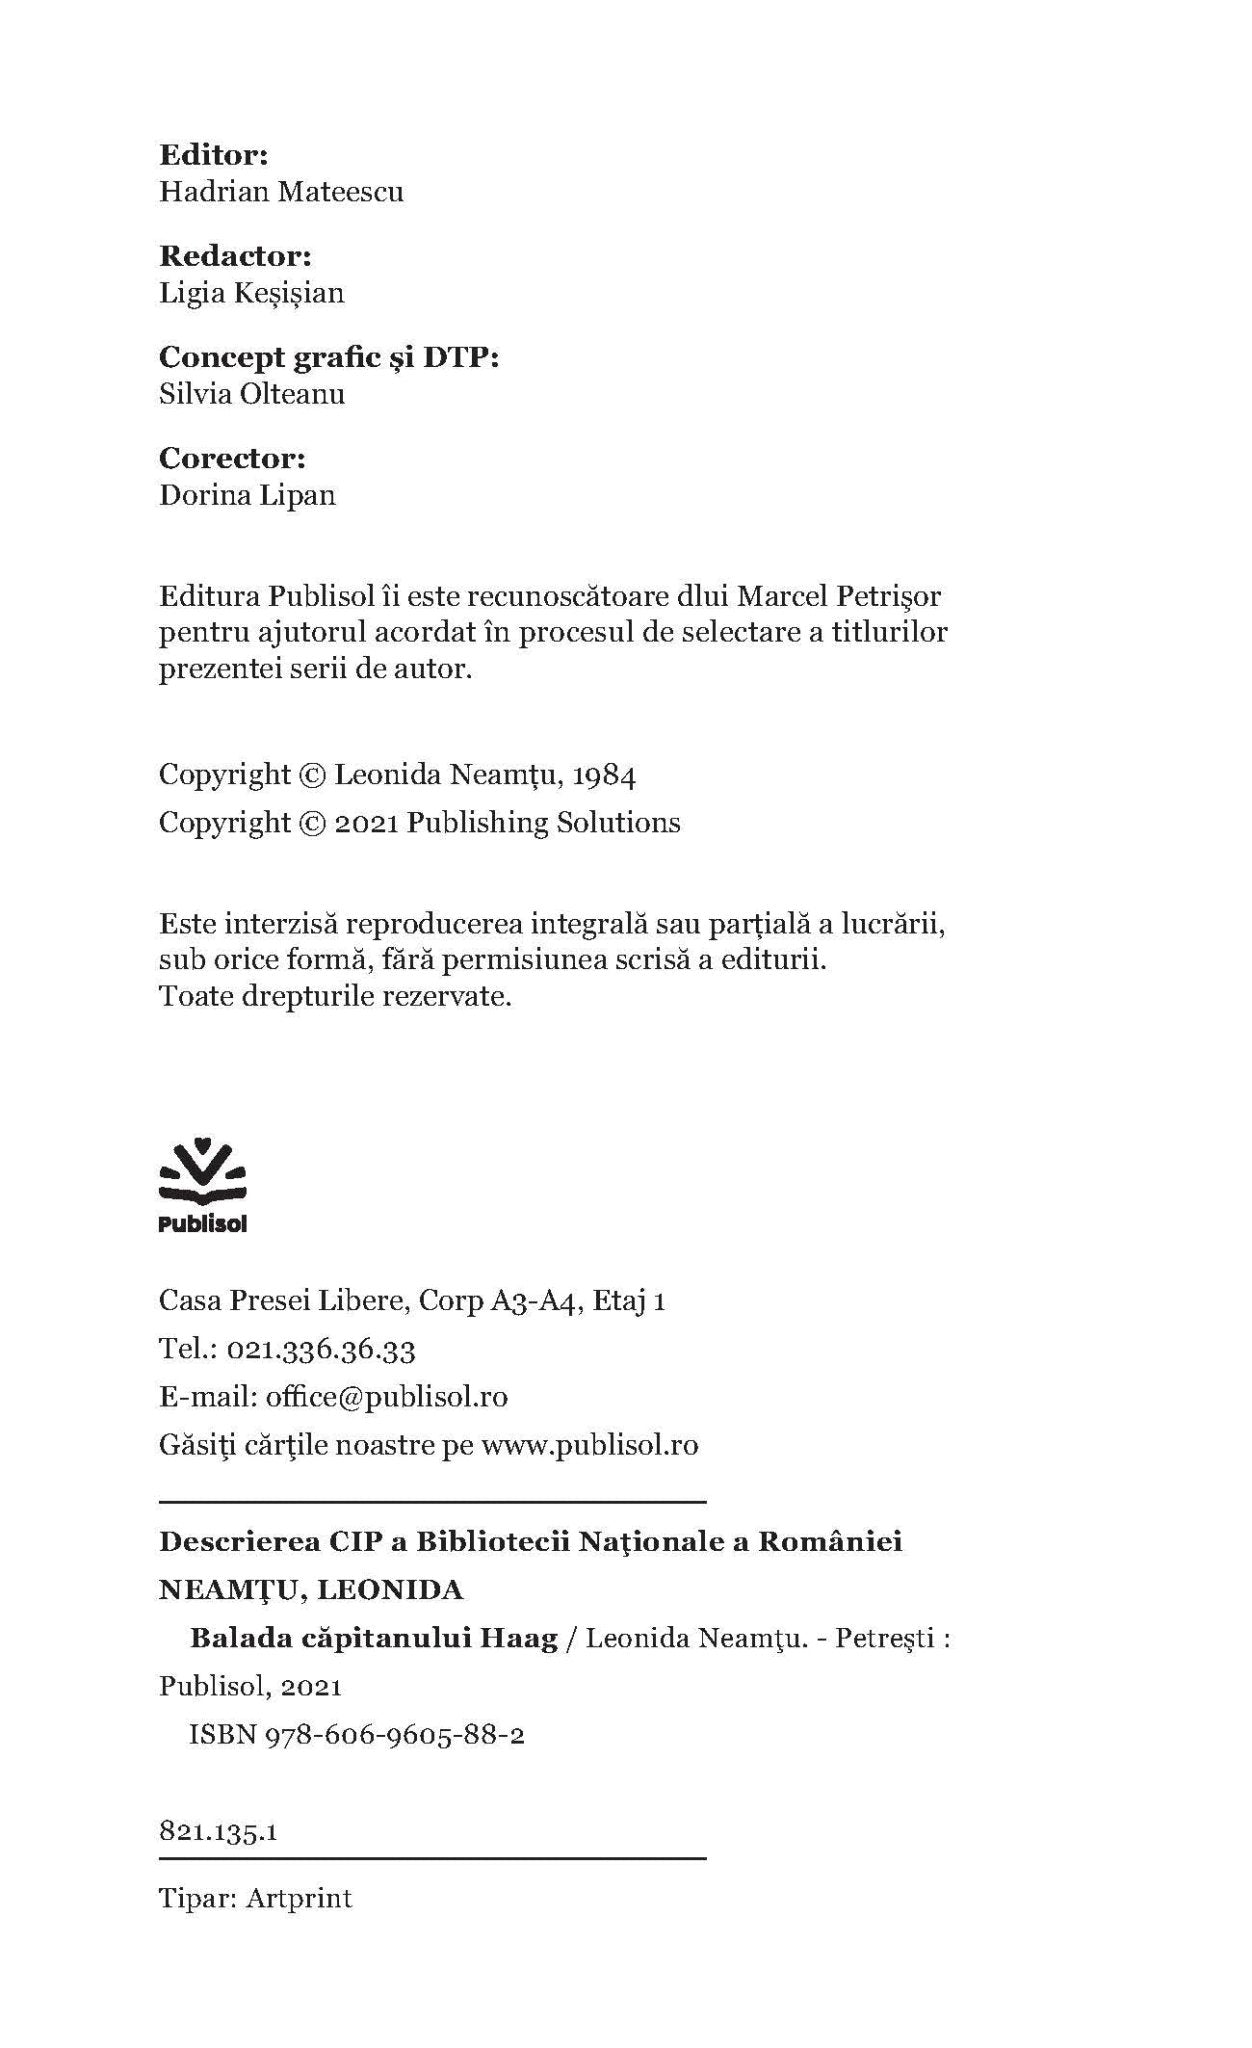 Balada Capitanului Haag - Ed. digitala - PDF - Publisol.ro